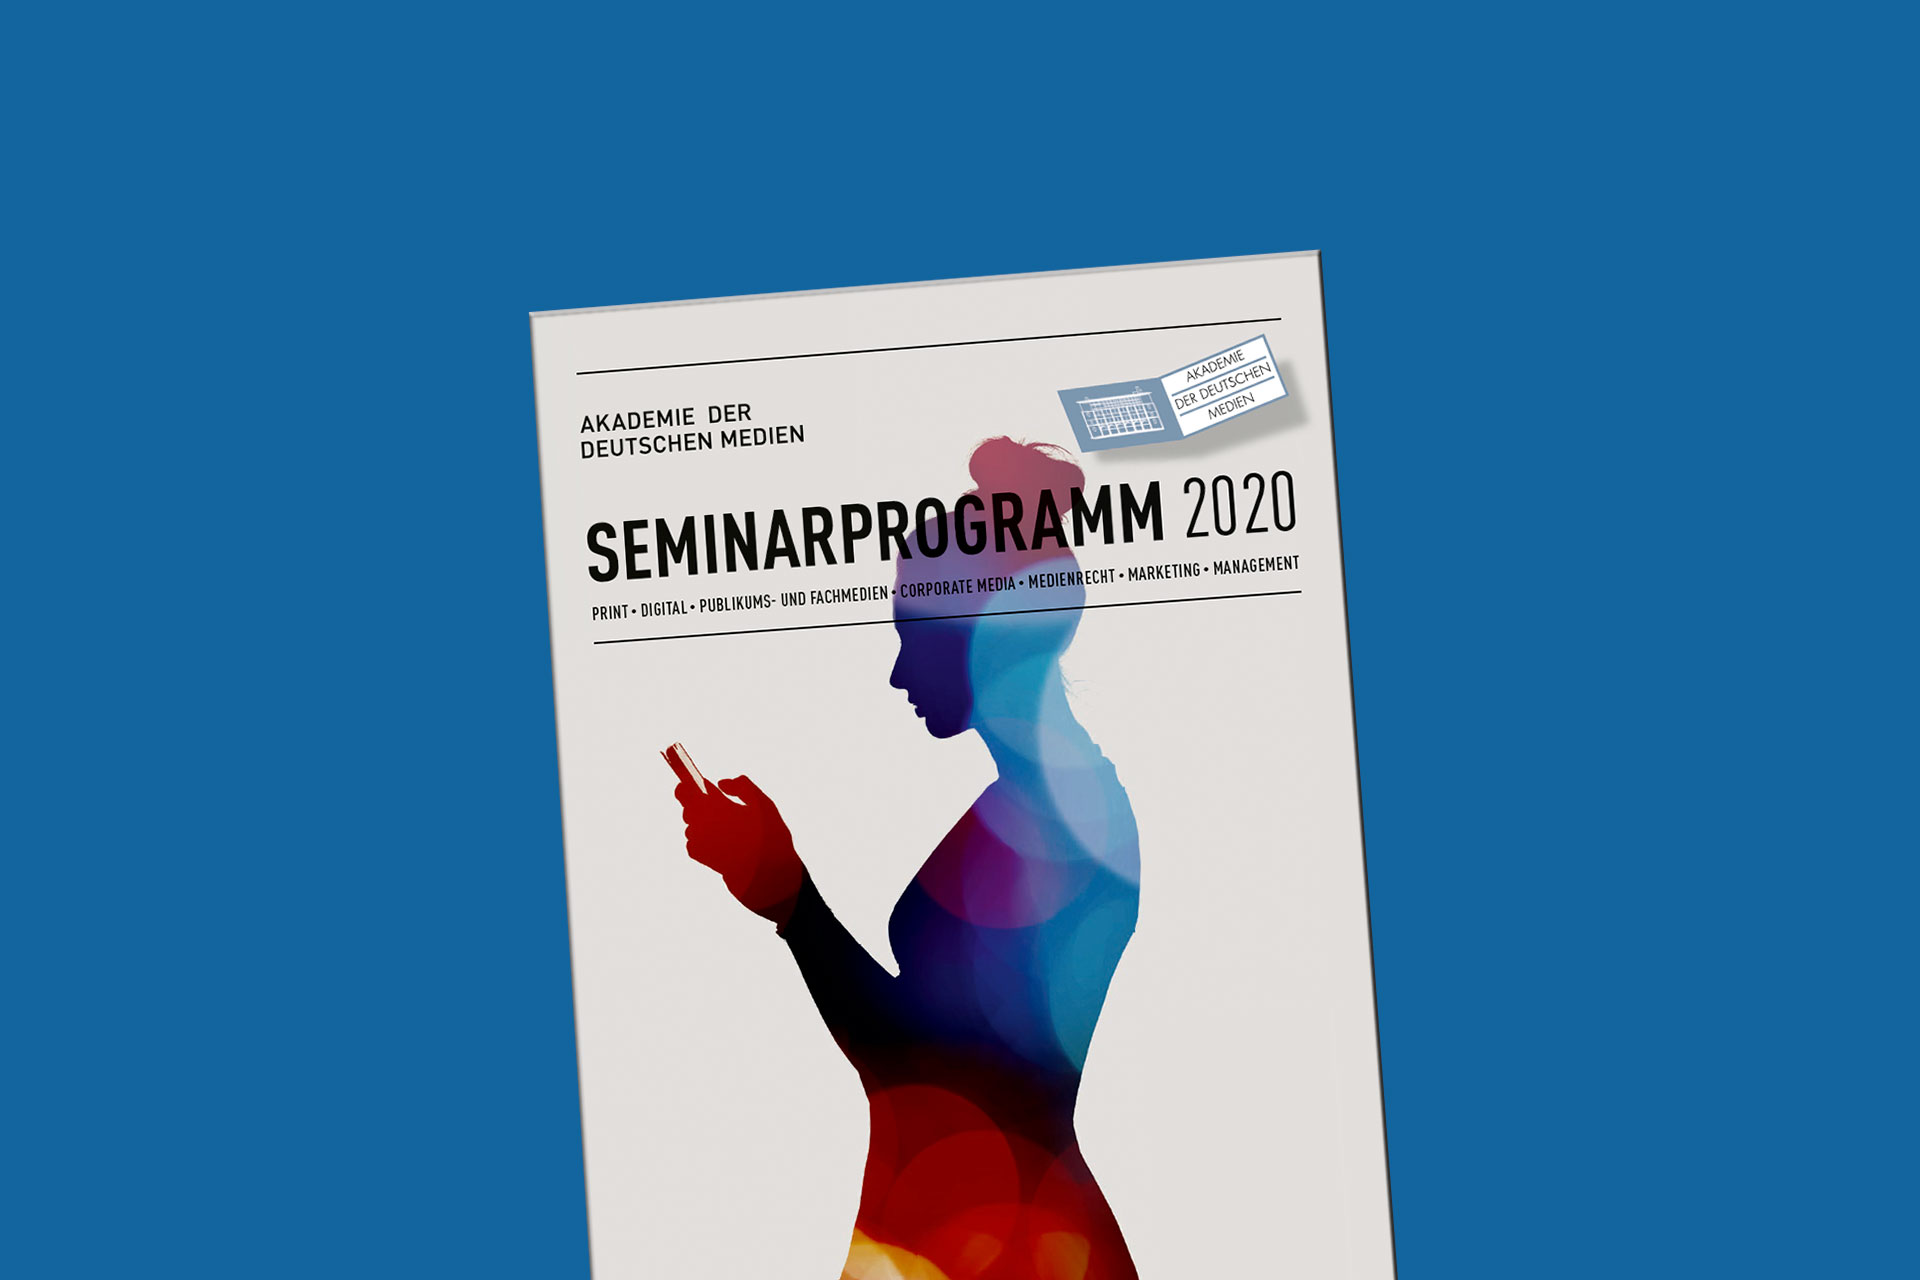 Seminarprogramm 2020 der Akademie der Deutschen Medien